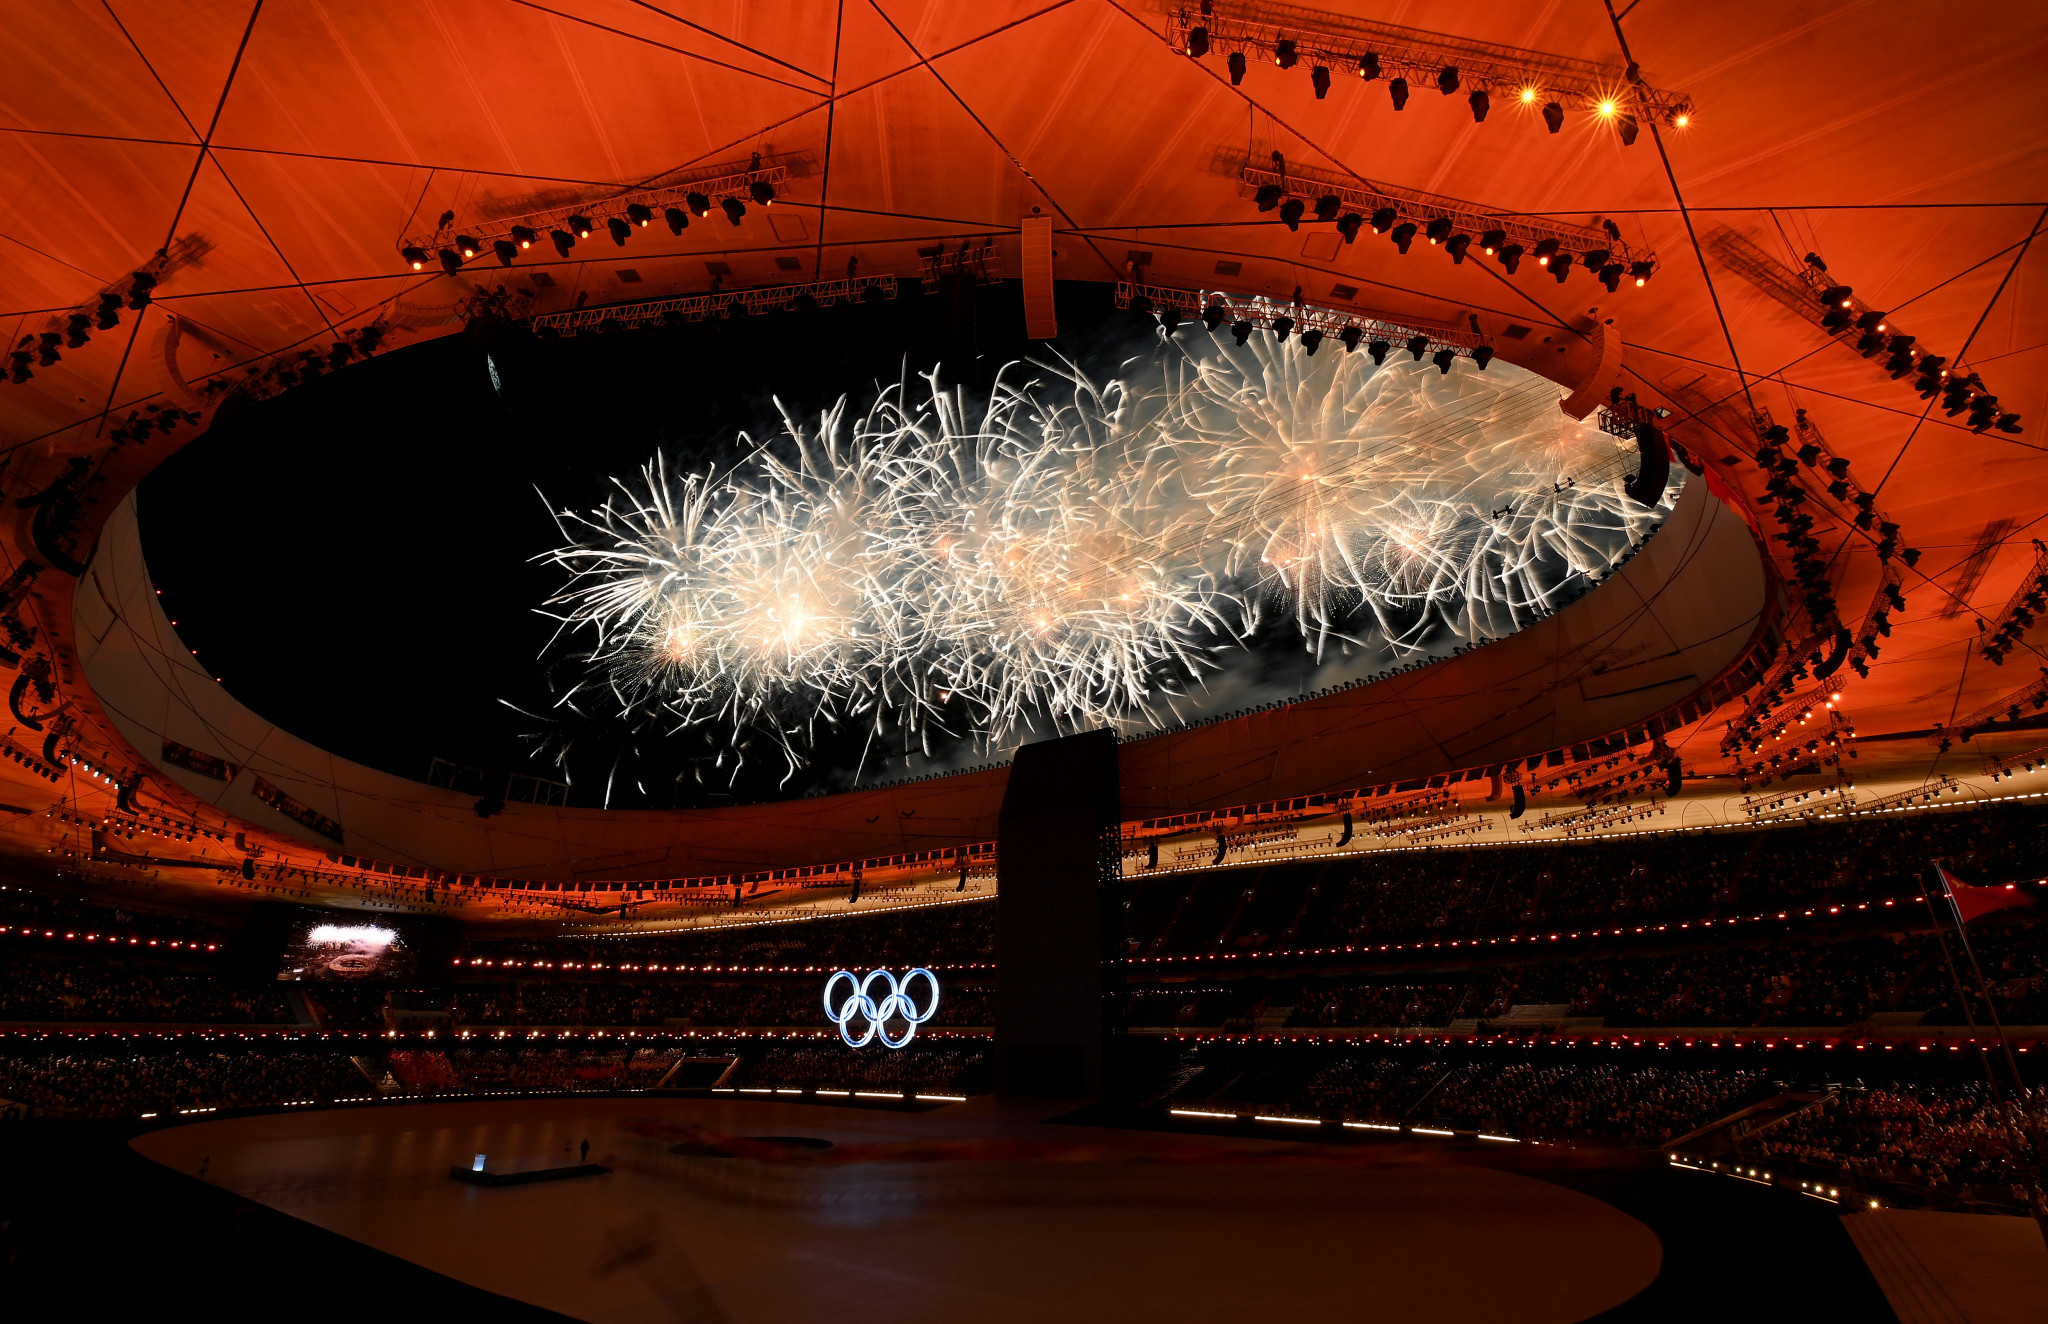 Beijing 2022 opening ceremony